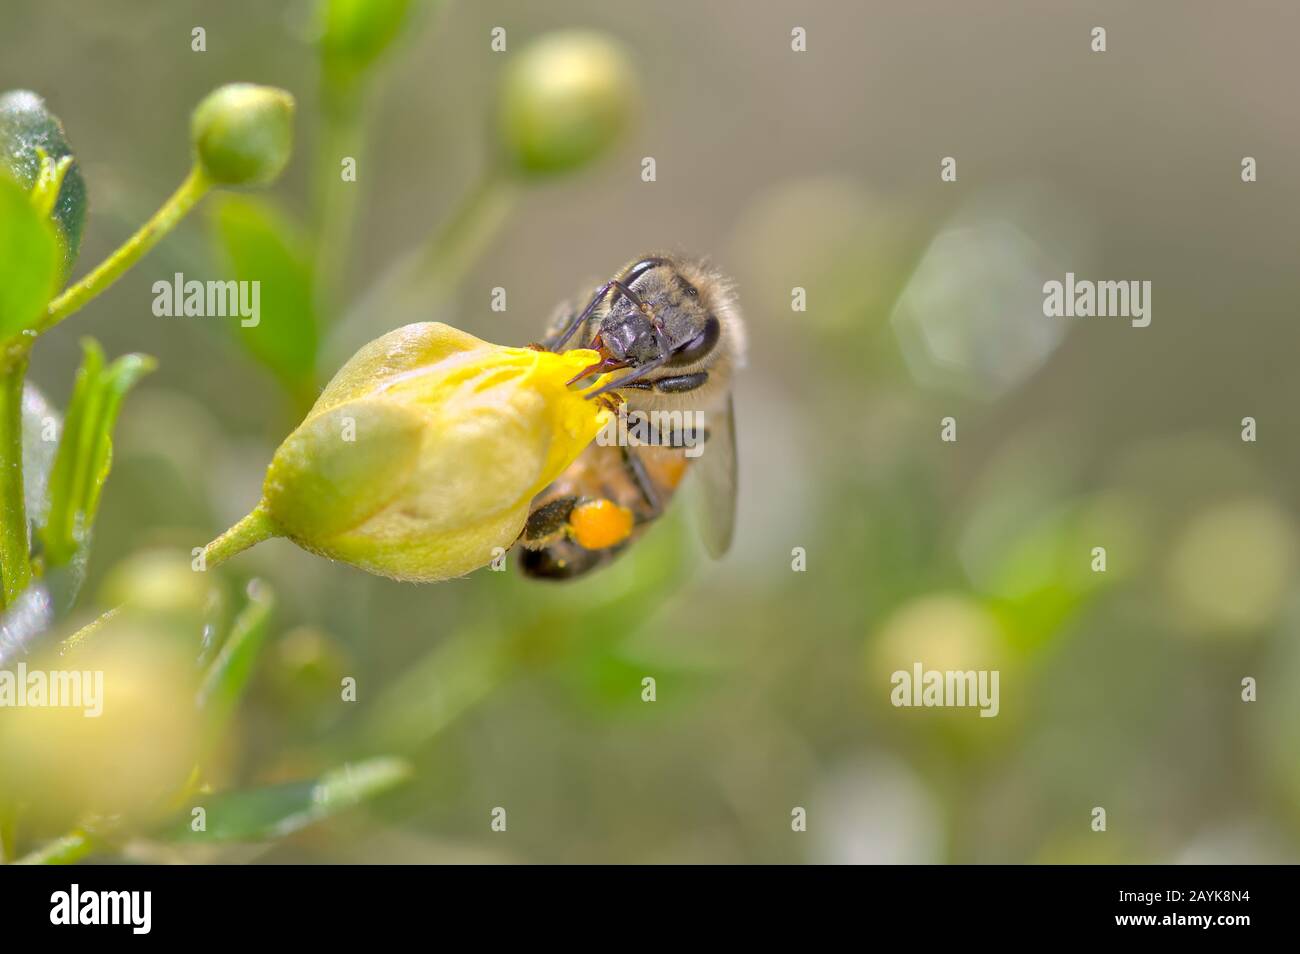 Une abeille originaire de l'Arizona qui tente de sucer le nectar de la fleur d'un Creosote Bush qui n'a pas encore ouvert. Banque D'Images